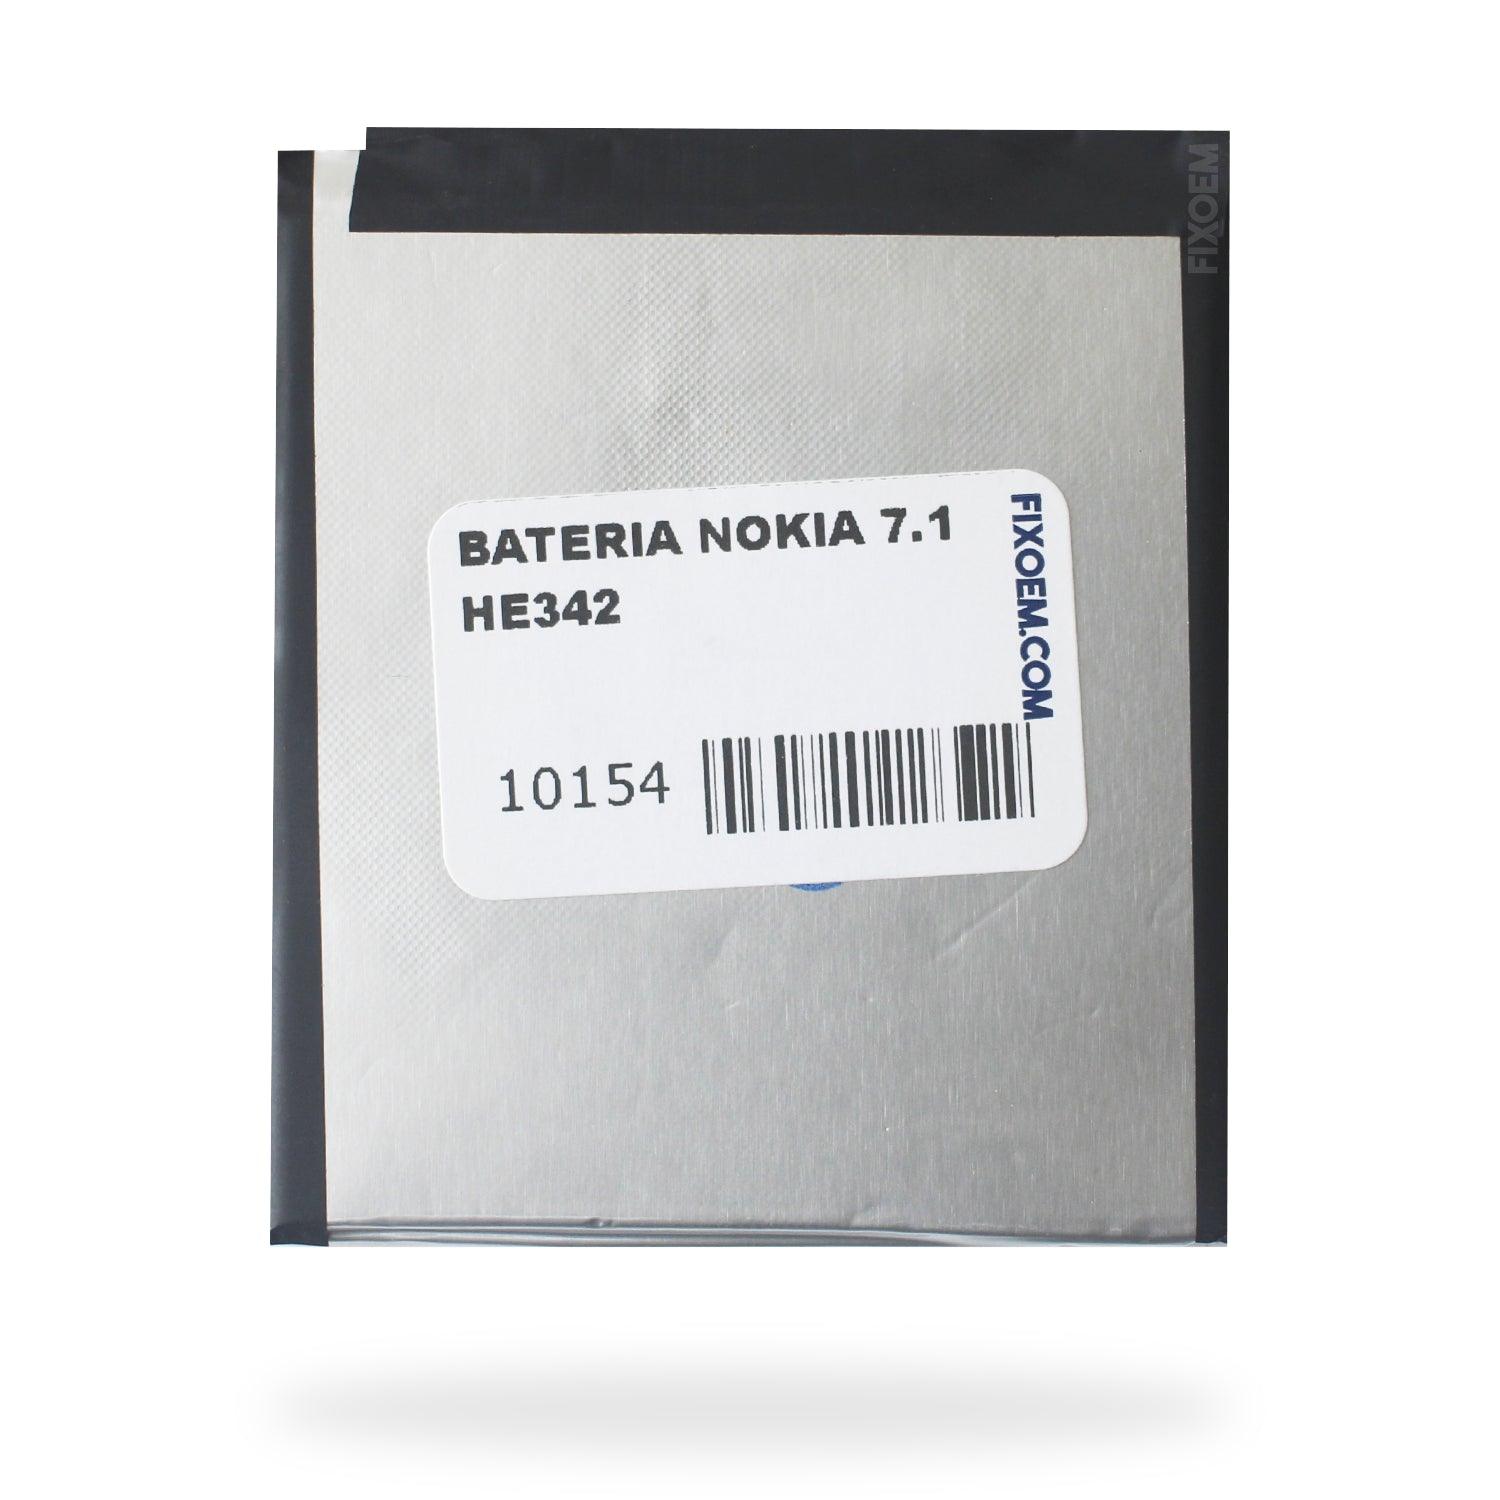 Bateria Nokia 7.1 Ta-1096 He342 a solo $ 130.00 Refaccion y puestos celulares, refurbish y microelectronica.- FixOEM